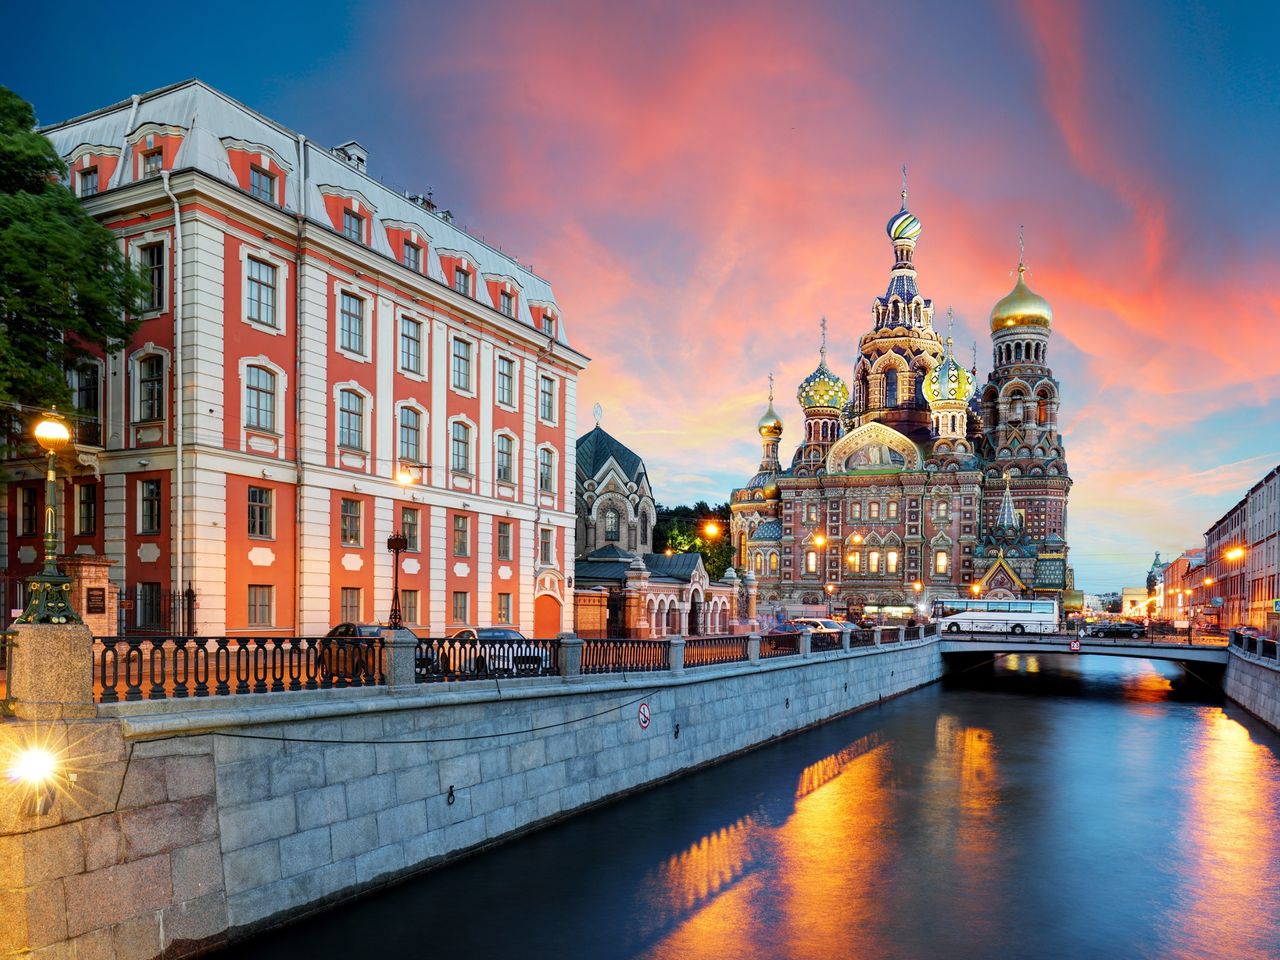  Ознакомительная поездка «Виват, Петербург!»  | Цена 11200₽, отзывы, описание экскурсии